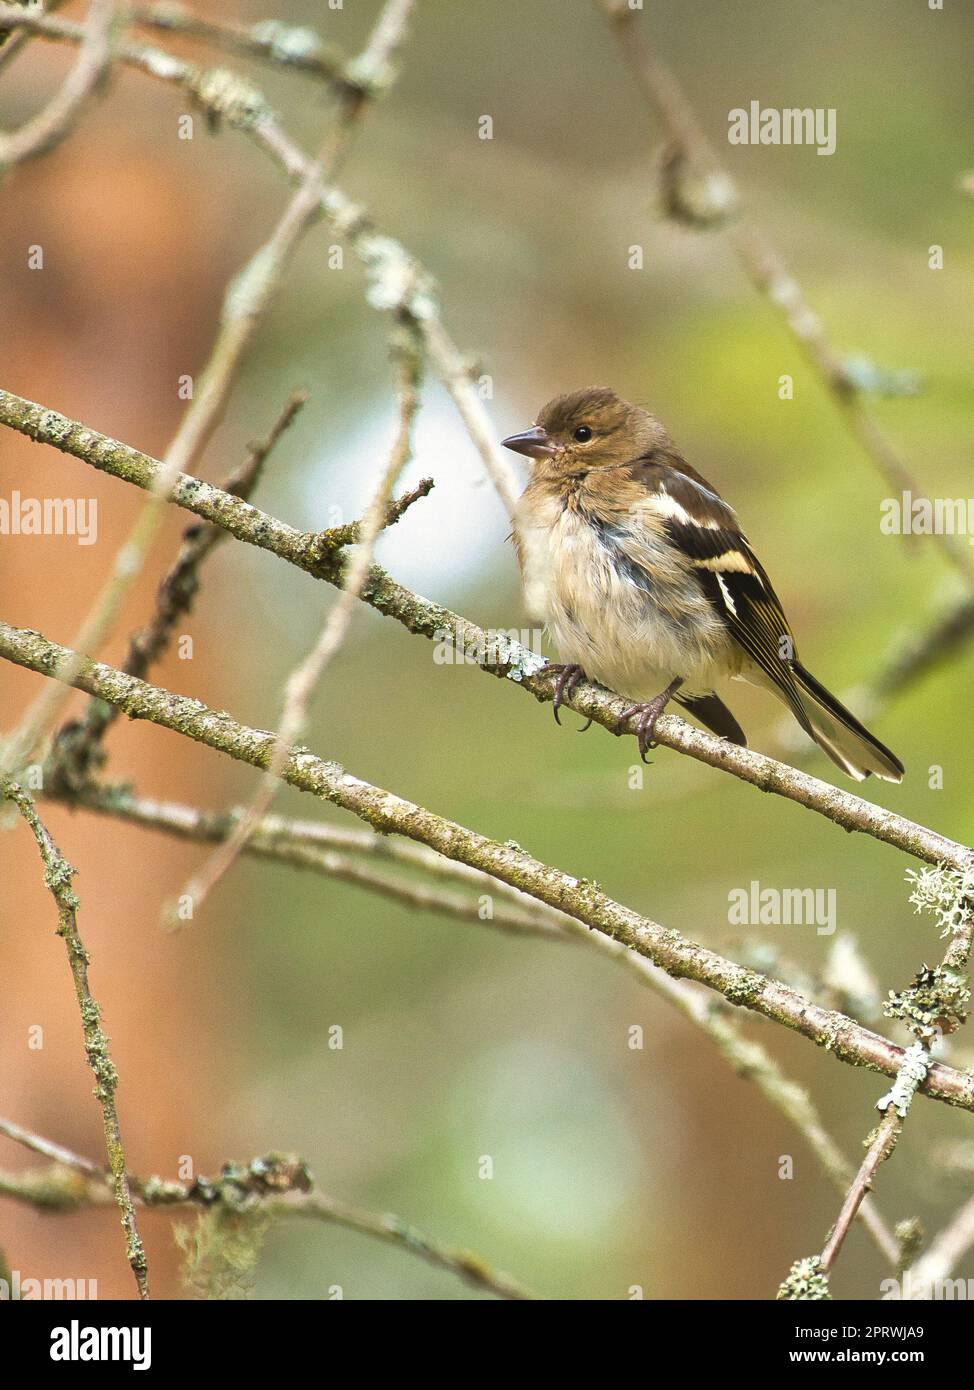 Chaffinch giovane su un ramo della foresta. Marrone, grigio, piumaggio verde. Songbird Foto Stock